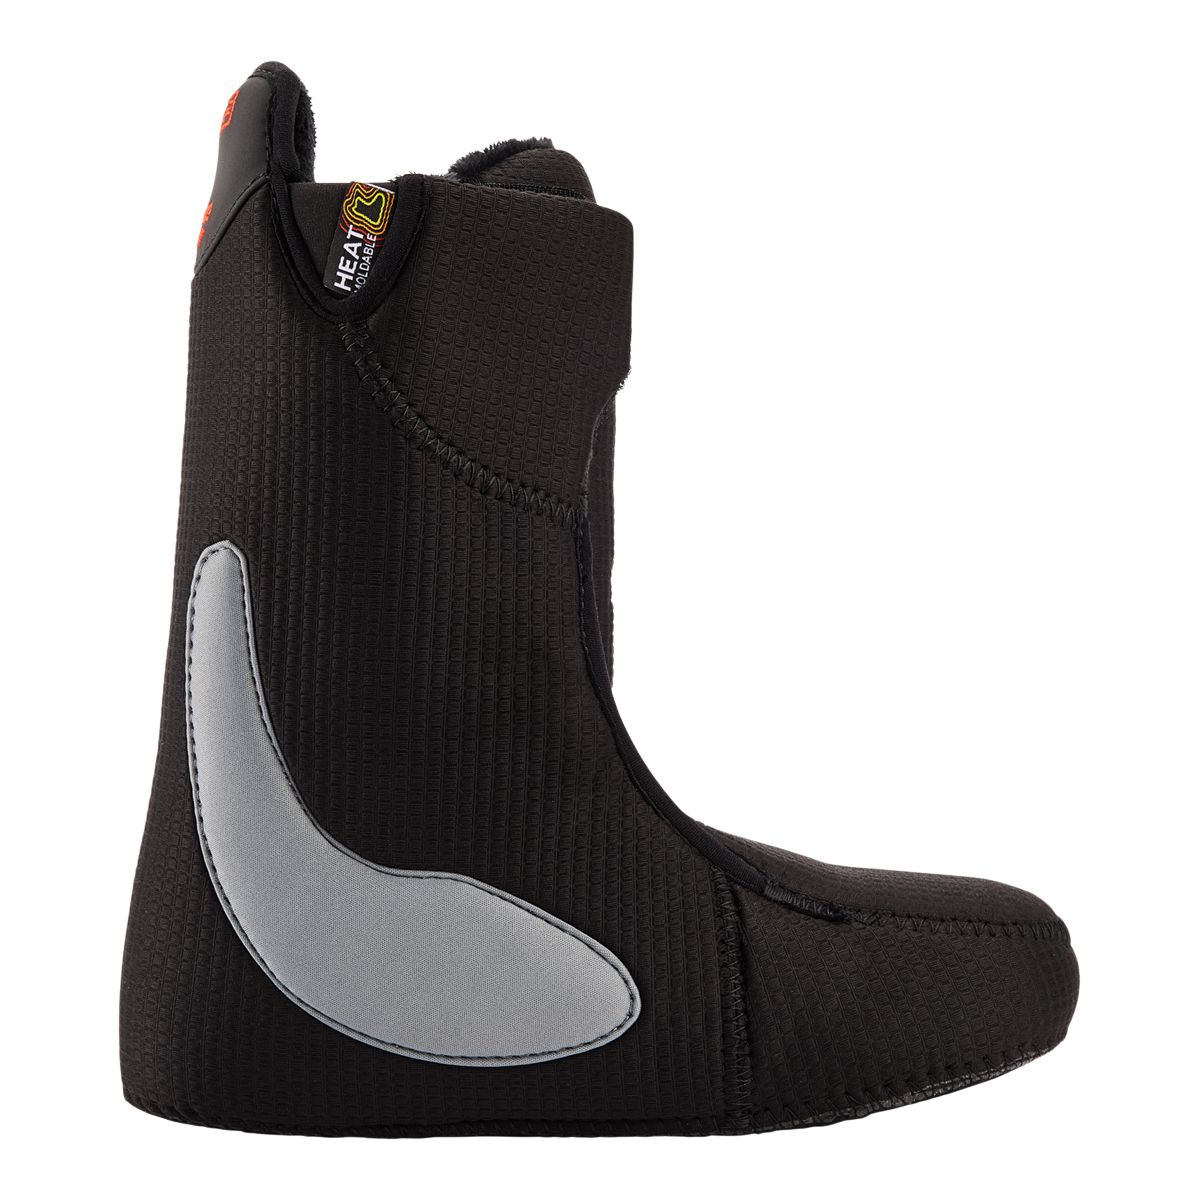 Columbia Men's Bugaboot Celsius Comfortable Waterproof Winter Boots